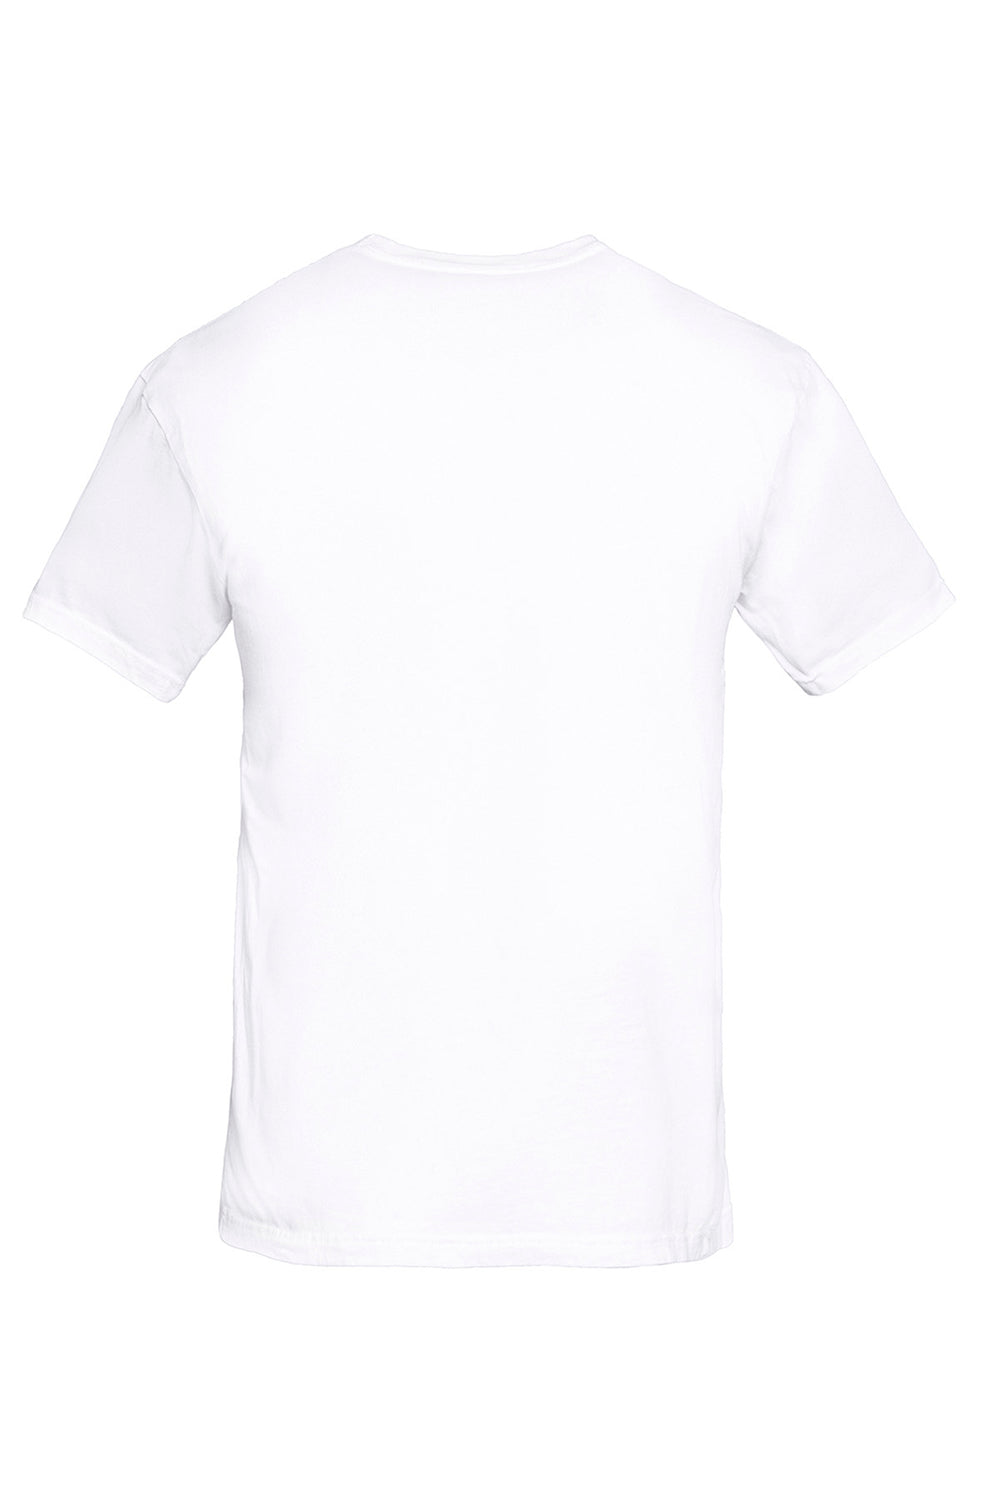 Next Level 3600SW Mens Soft Wash Short Sleeve Crewneck T-Shirt White Flat Back